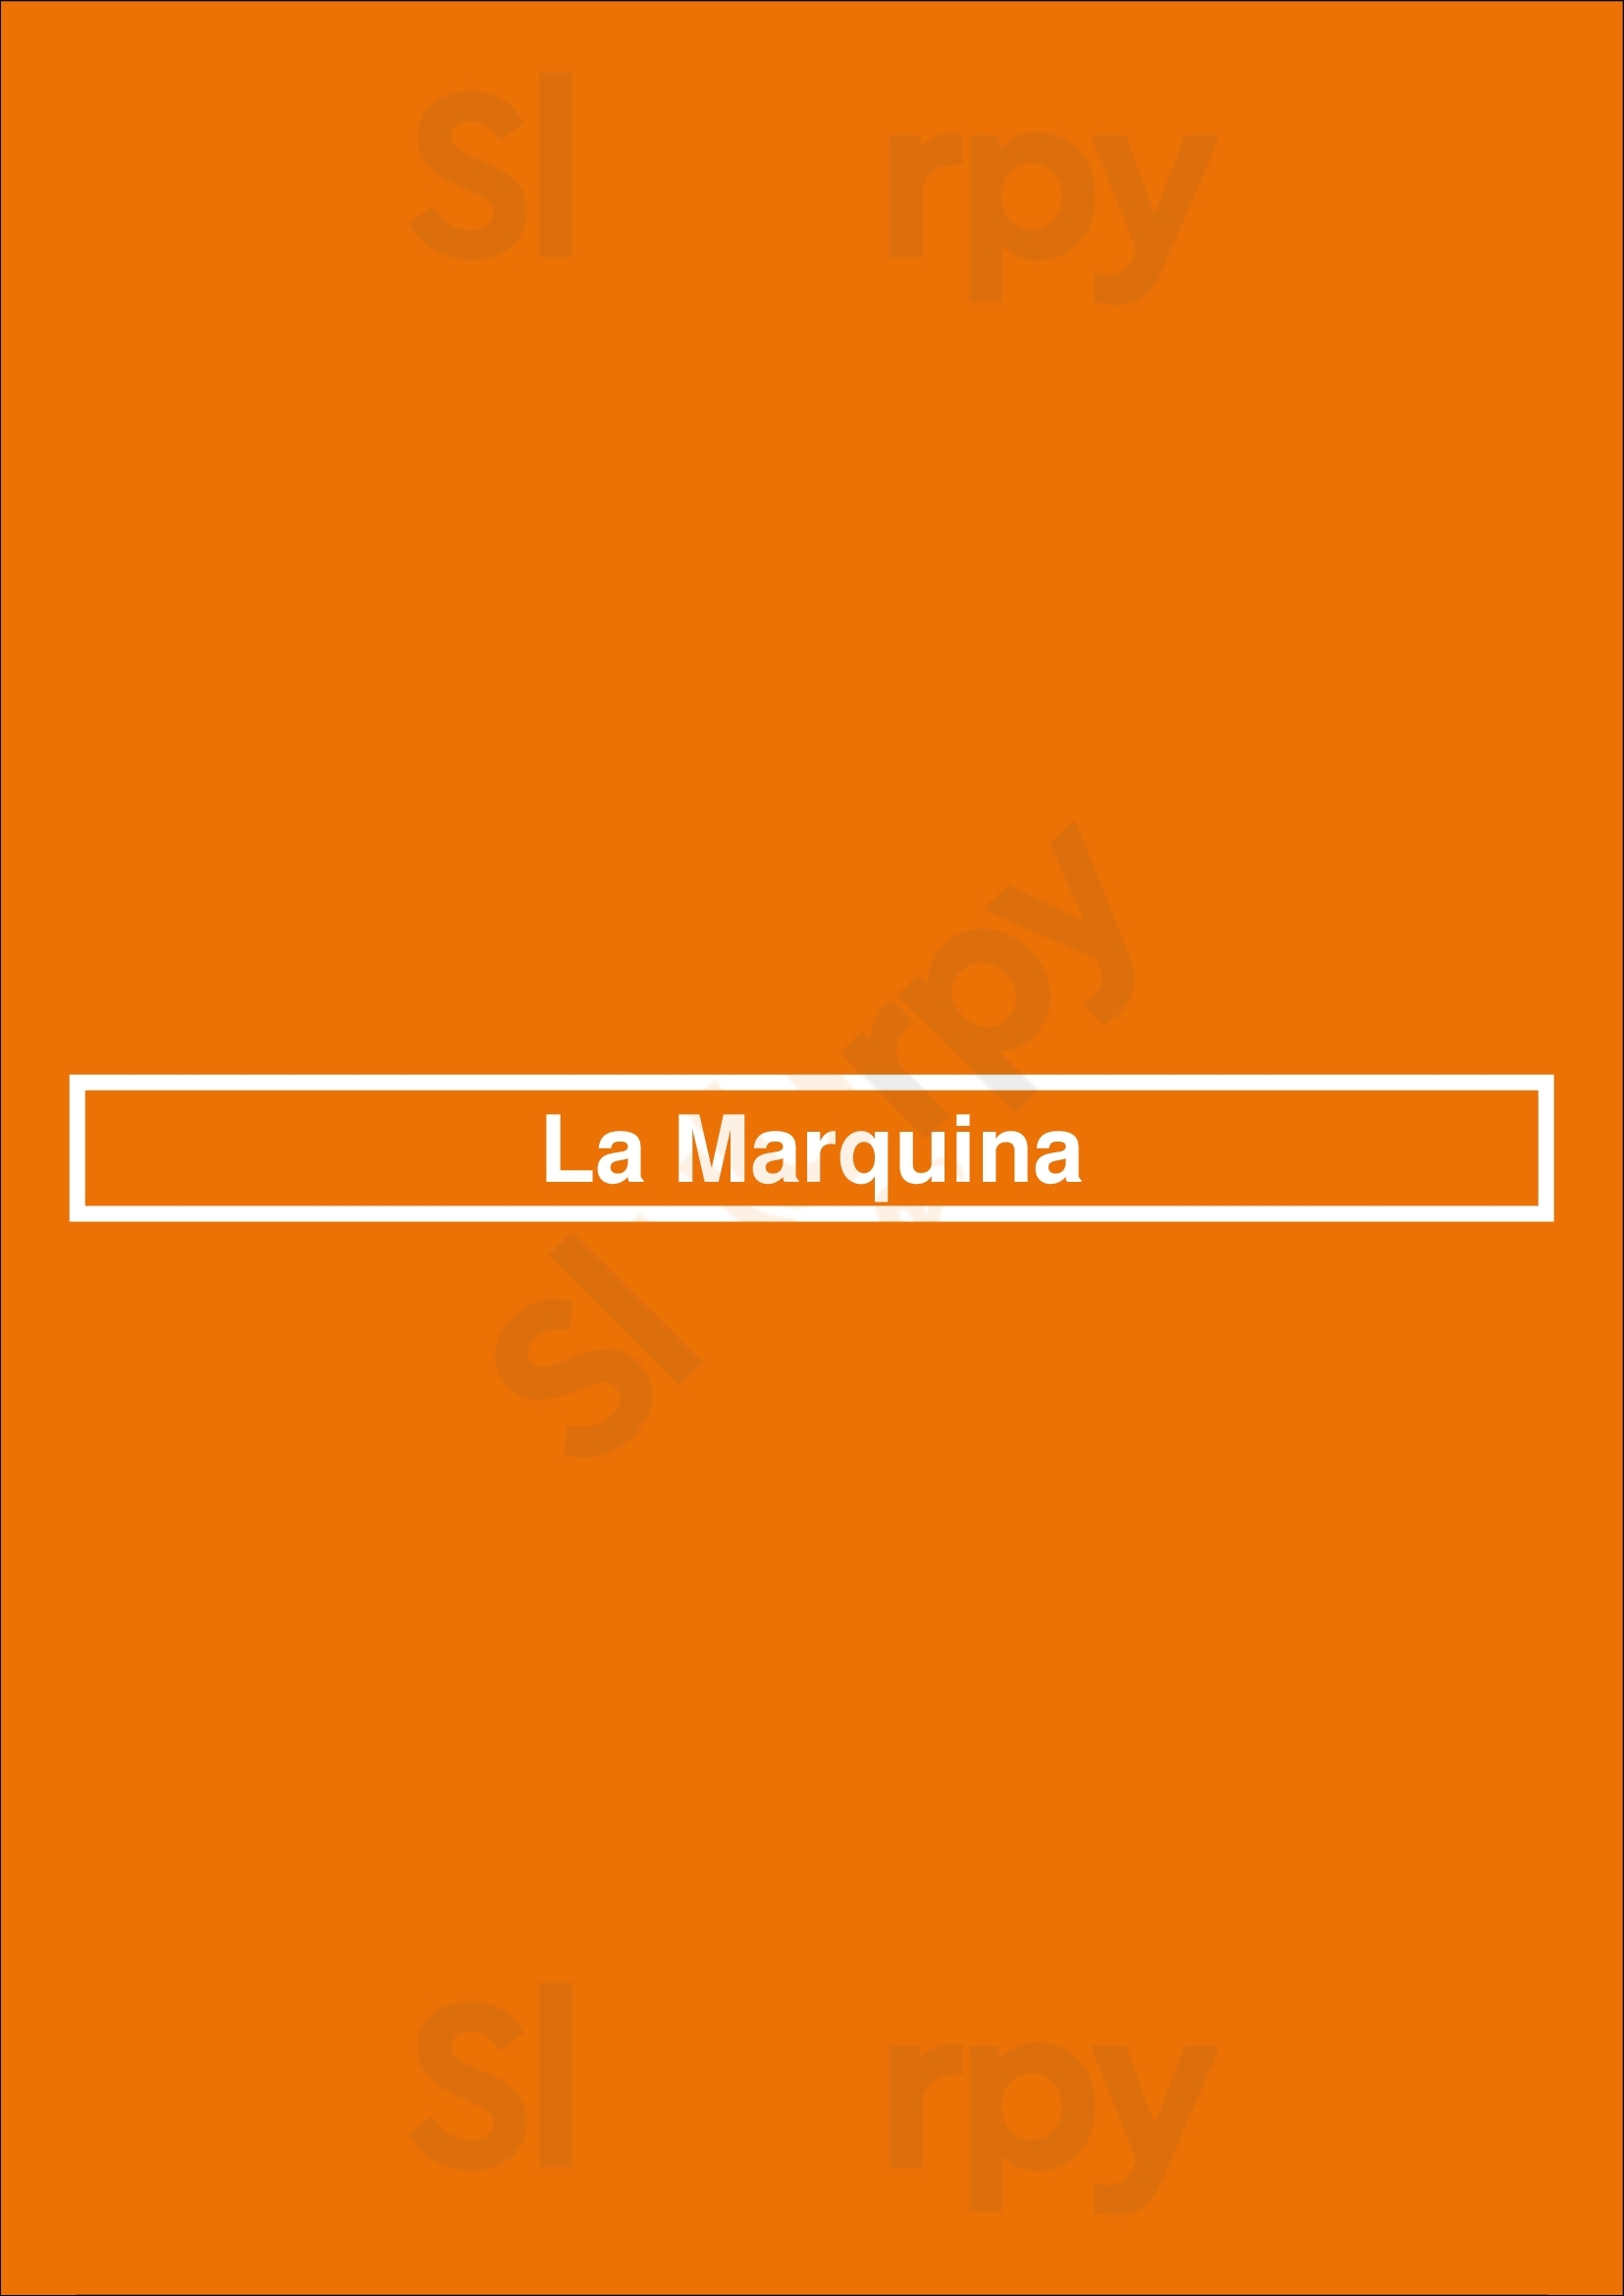 La Marquina Madrid Menu - 1